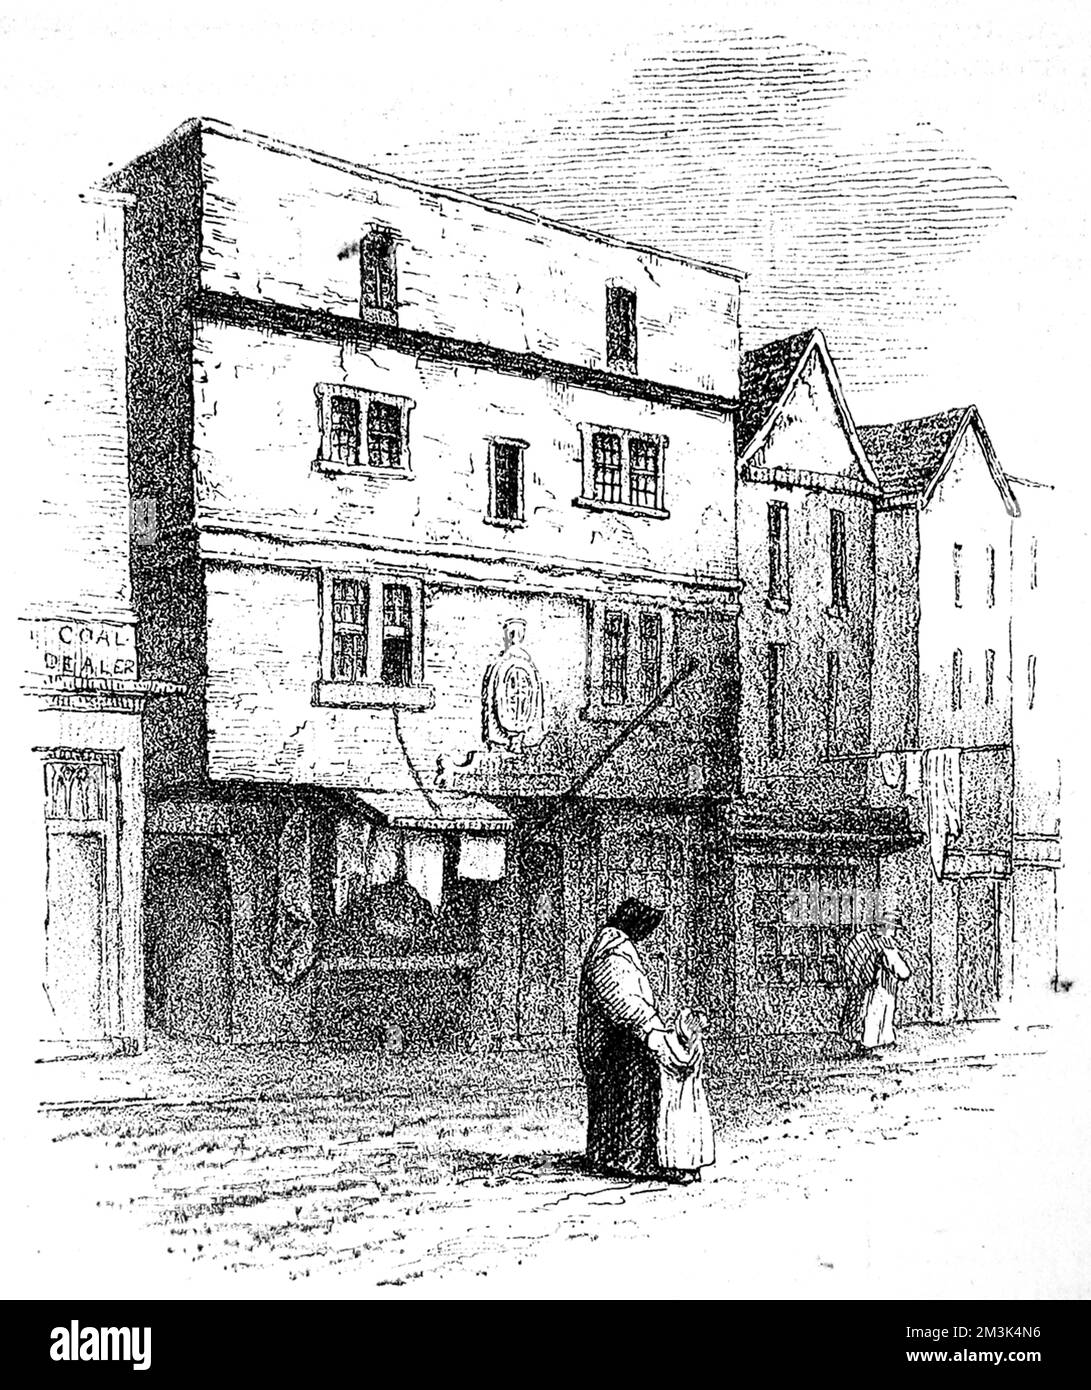 Grabado que muestra el exterior del Teatro Fortune, en St Giles, Cripplegate, Londres, bosquejado en 1840. Fecha: 22 de febrero de 1879 Foto de stock